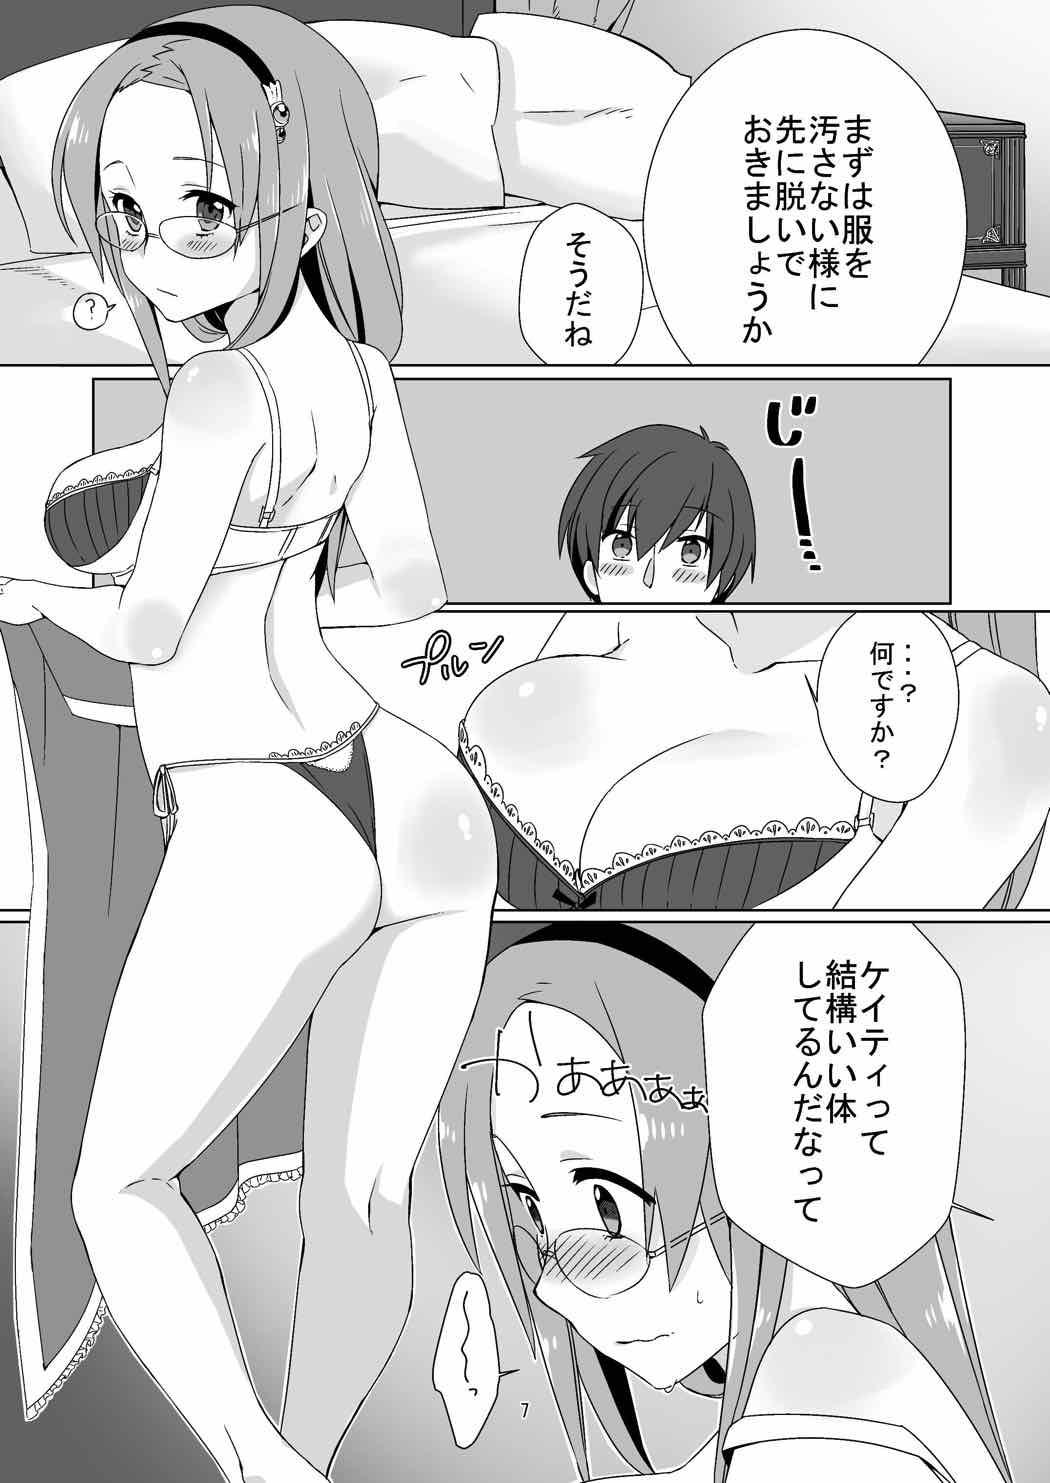 Game Himitsu no Kyoukasho - Sennen sensou aigis Barely 18 Porn - Page 6